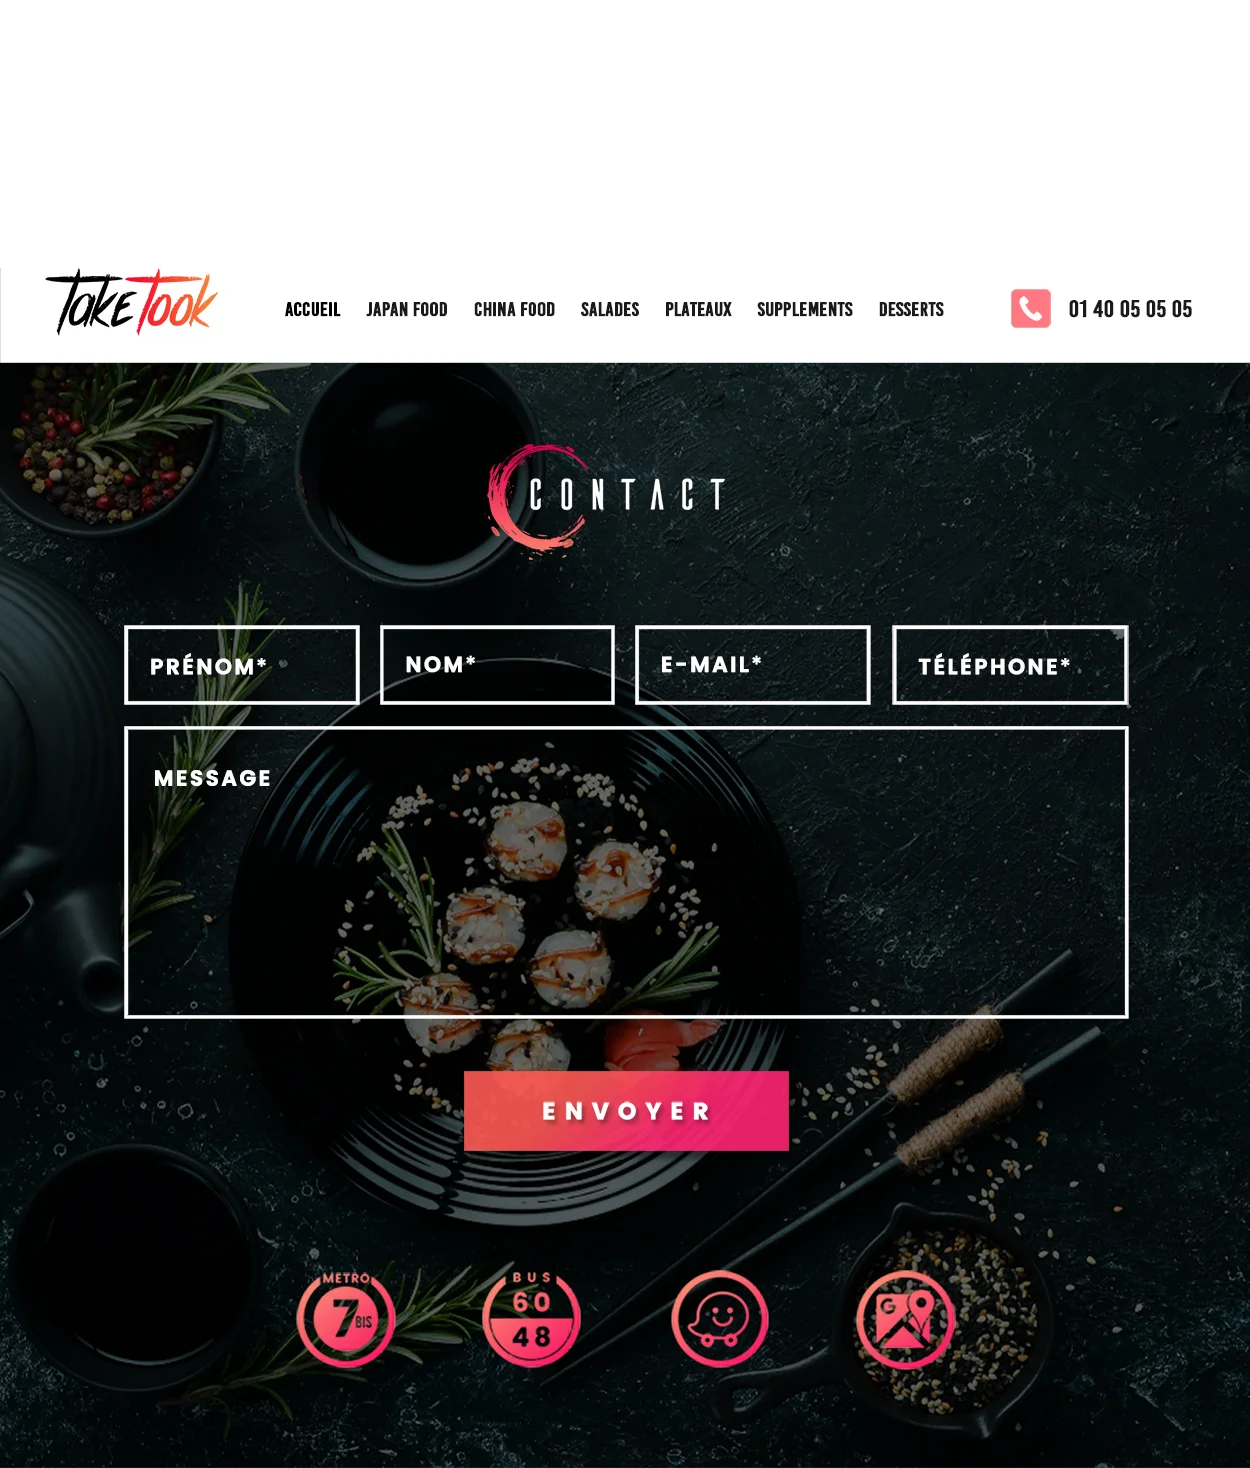 Aperçu de la page Contact du restaurant Japonais Taketook réalisé par Nev Interactive.